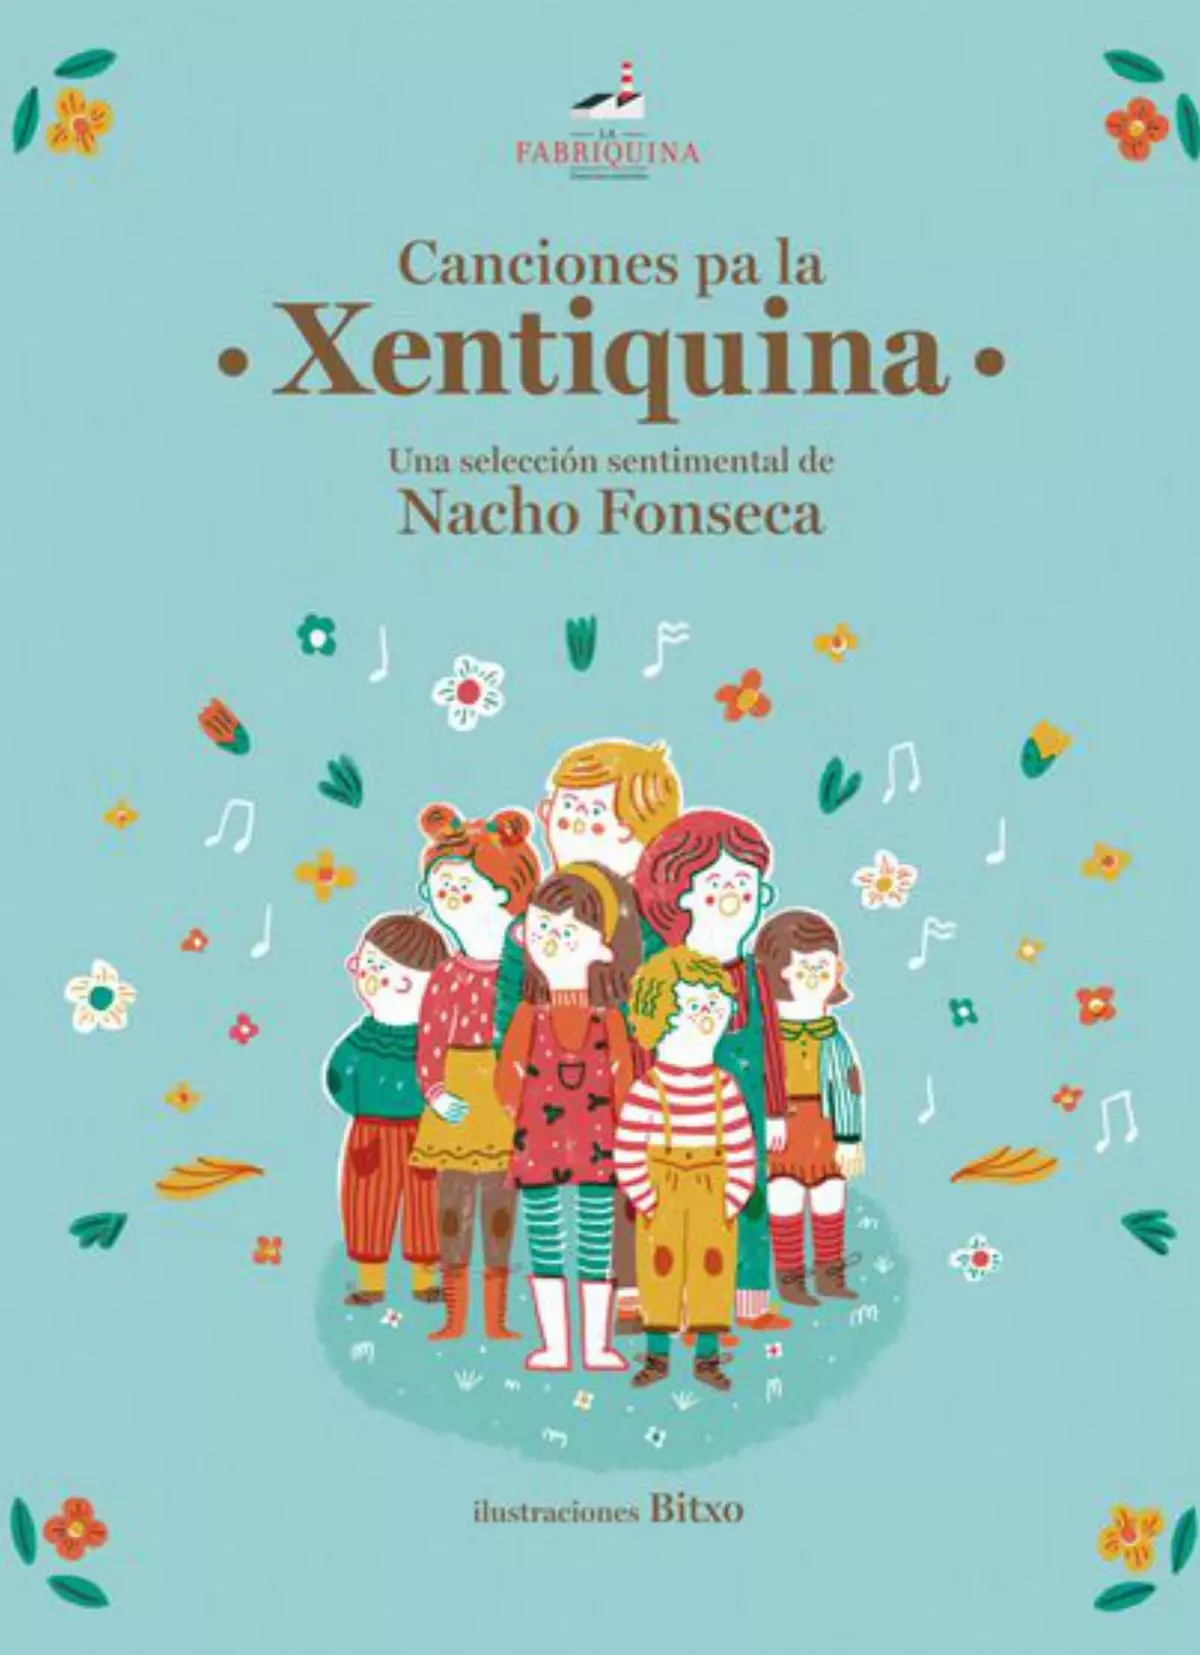 Publicado un disco-libro con una selección de temas de Nacho Fonseca